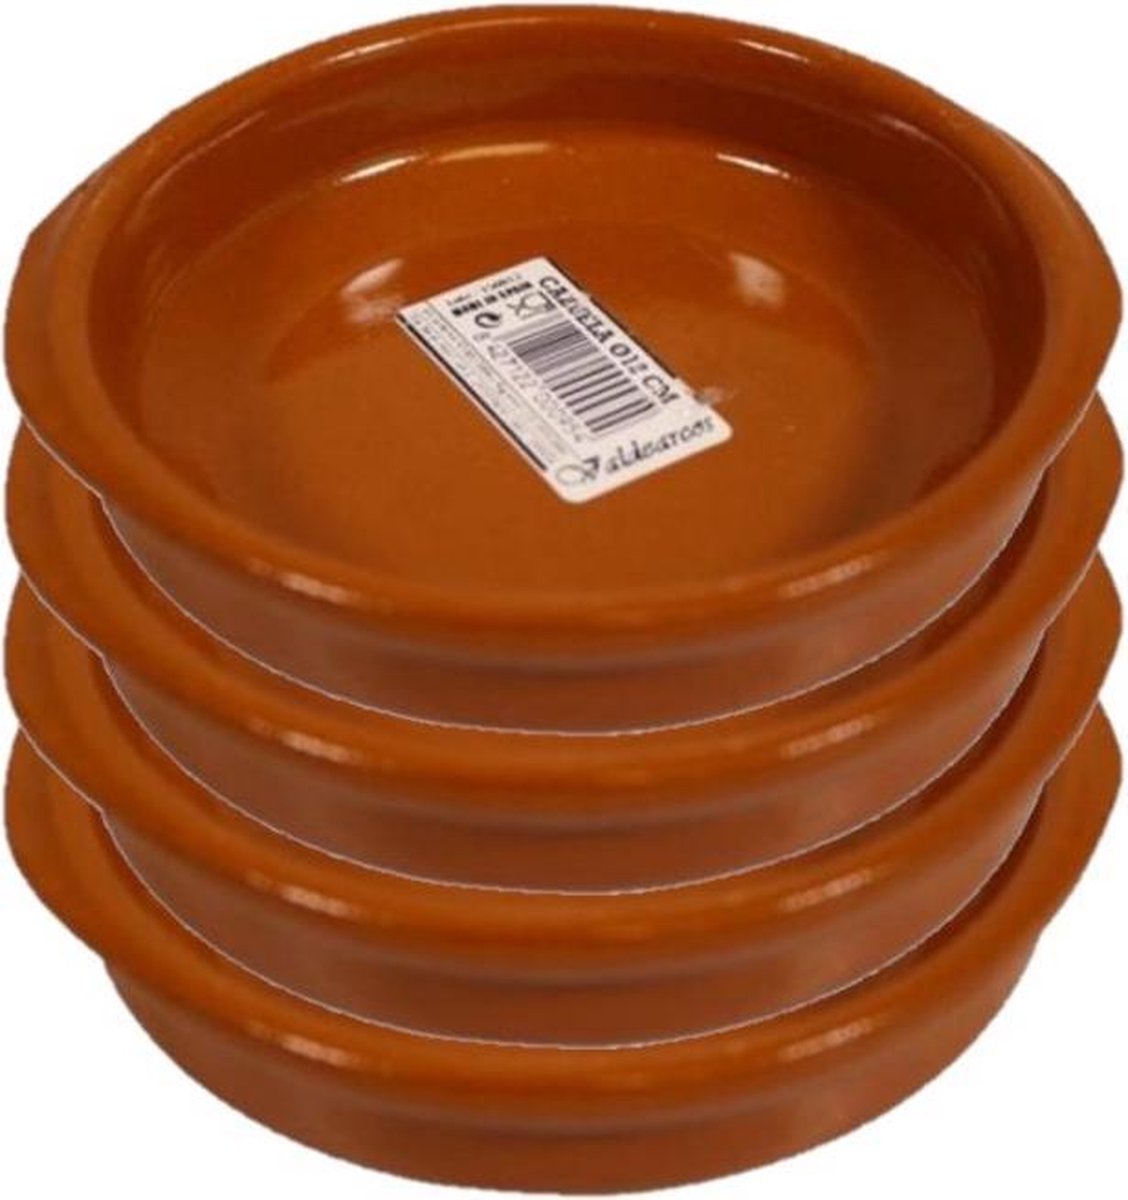 Set van 6x stuks tapas bakjes/schaaltjes Alicante met handvatten 12 cm - Tapas serveerschalen/borden/ovenschalen